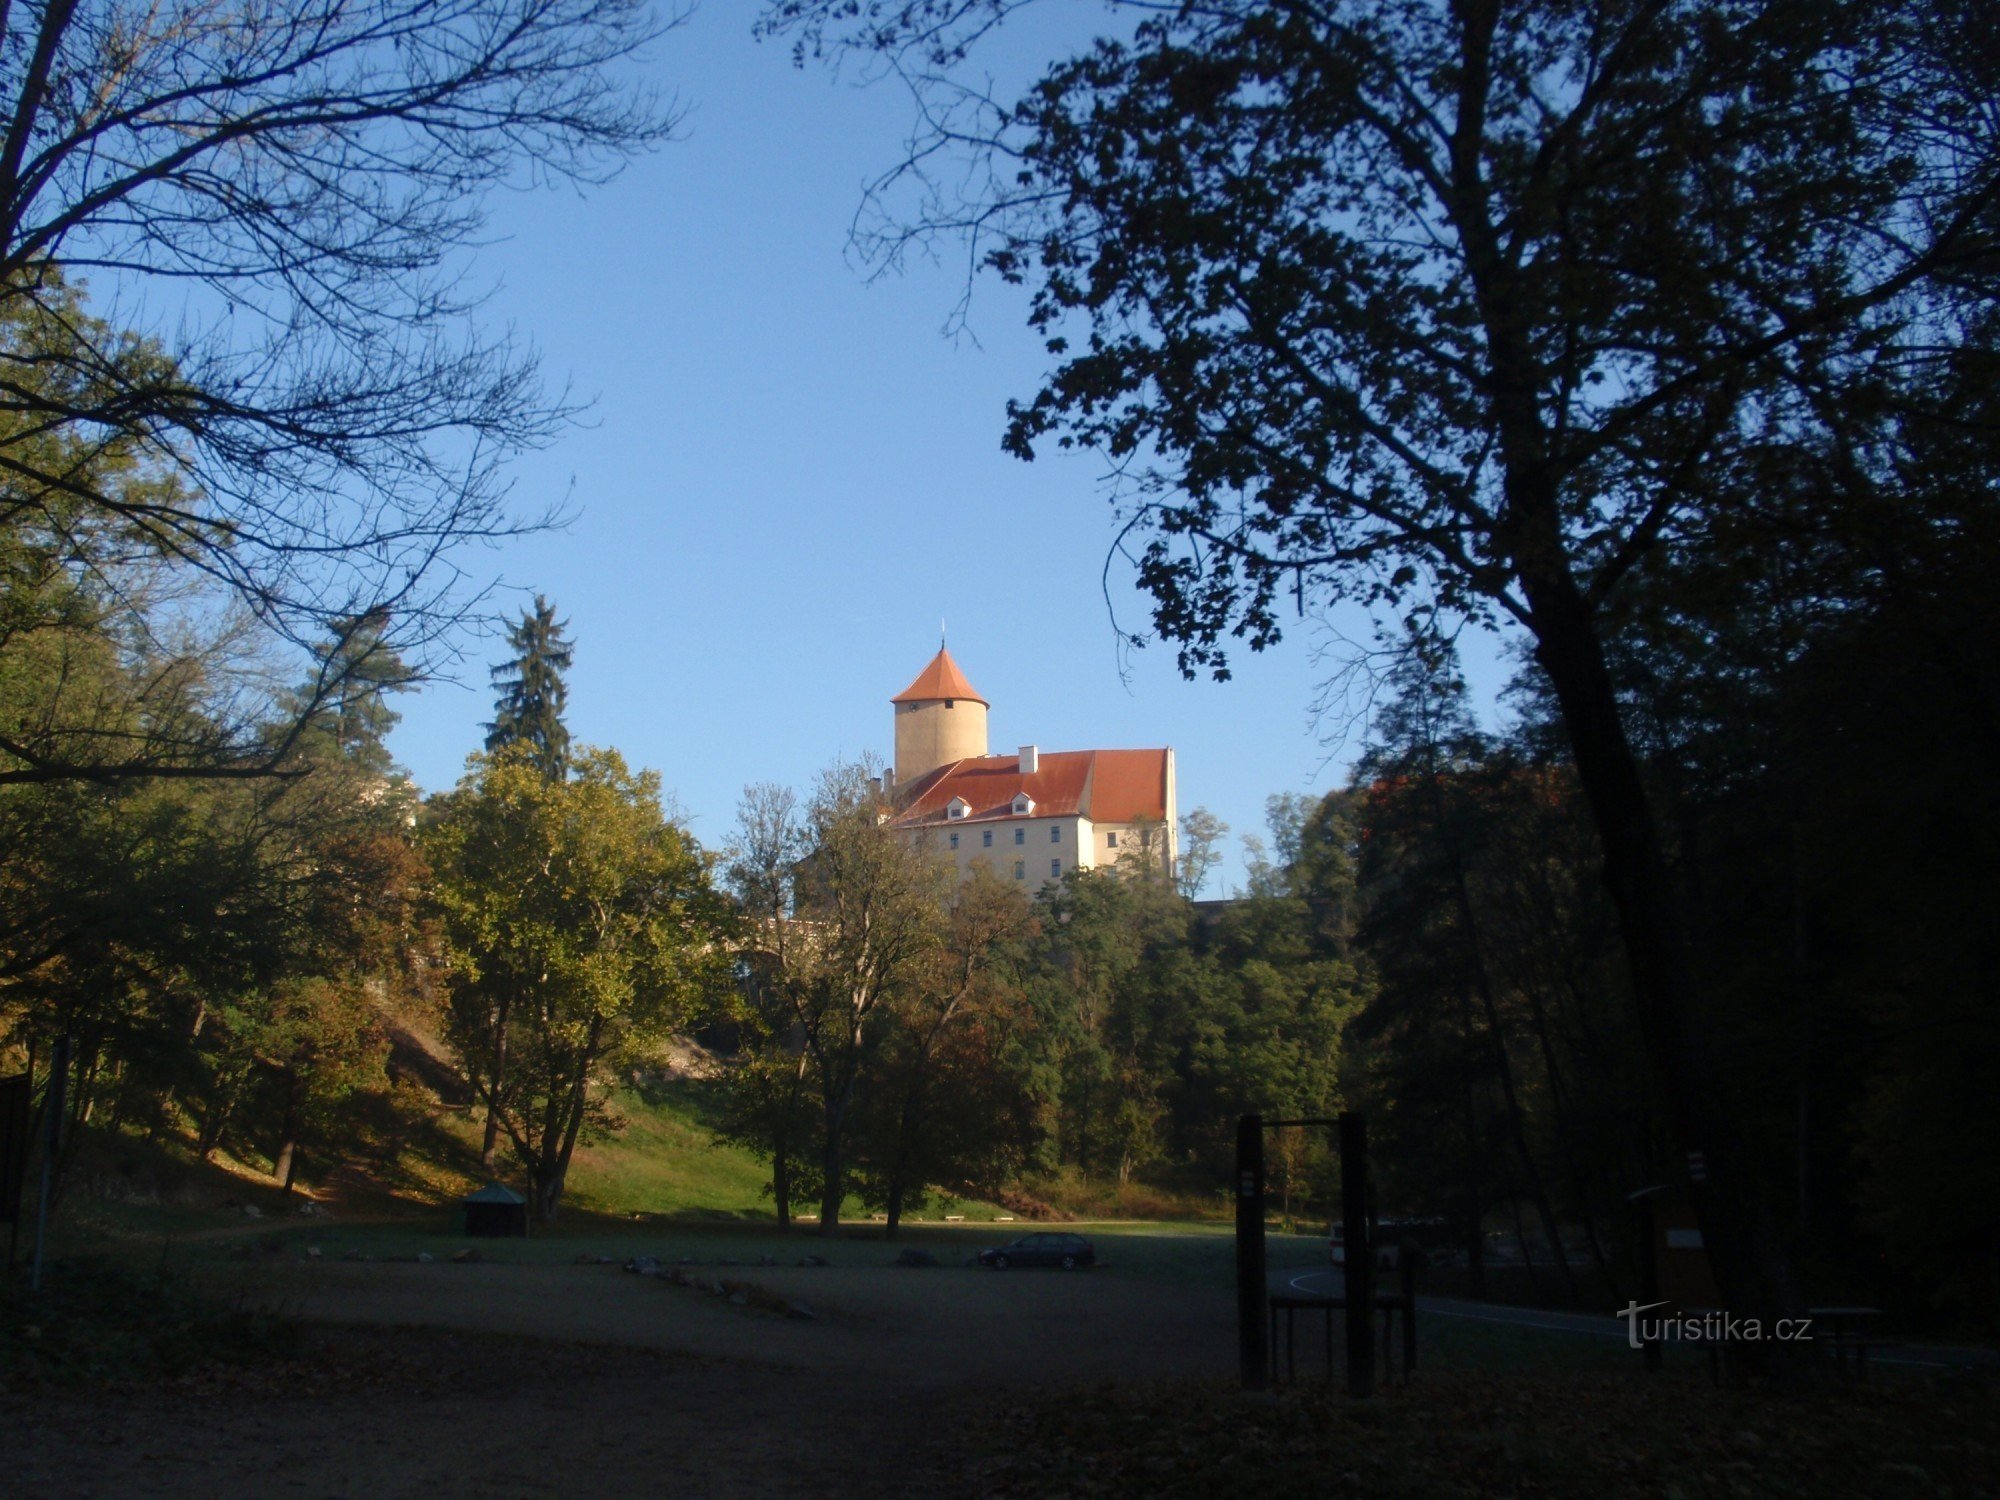 De la Castelul Veveří pe lângă baraj înapoi la Brno